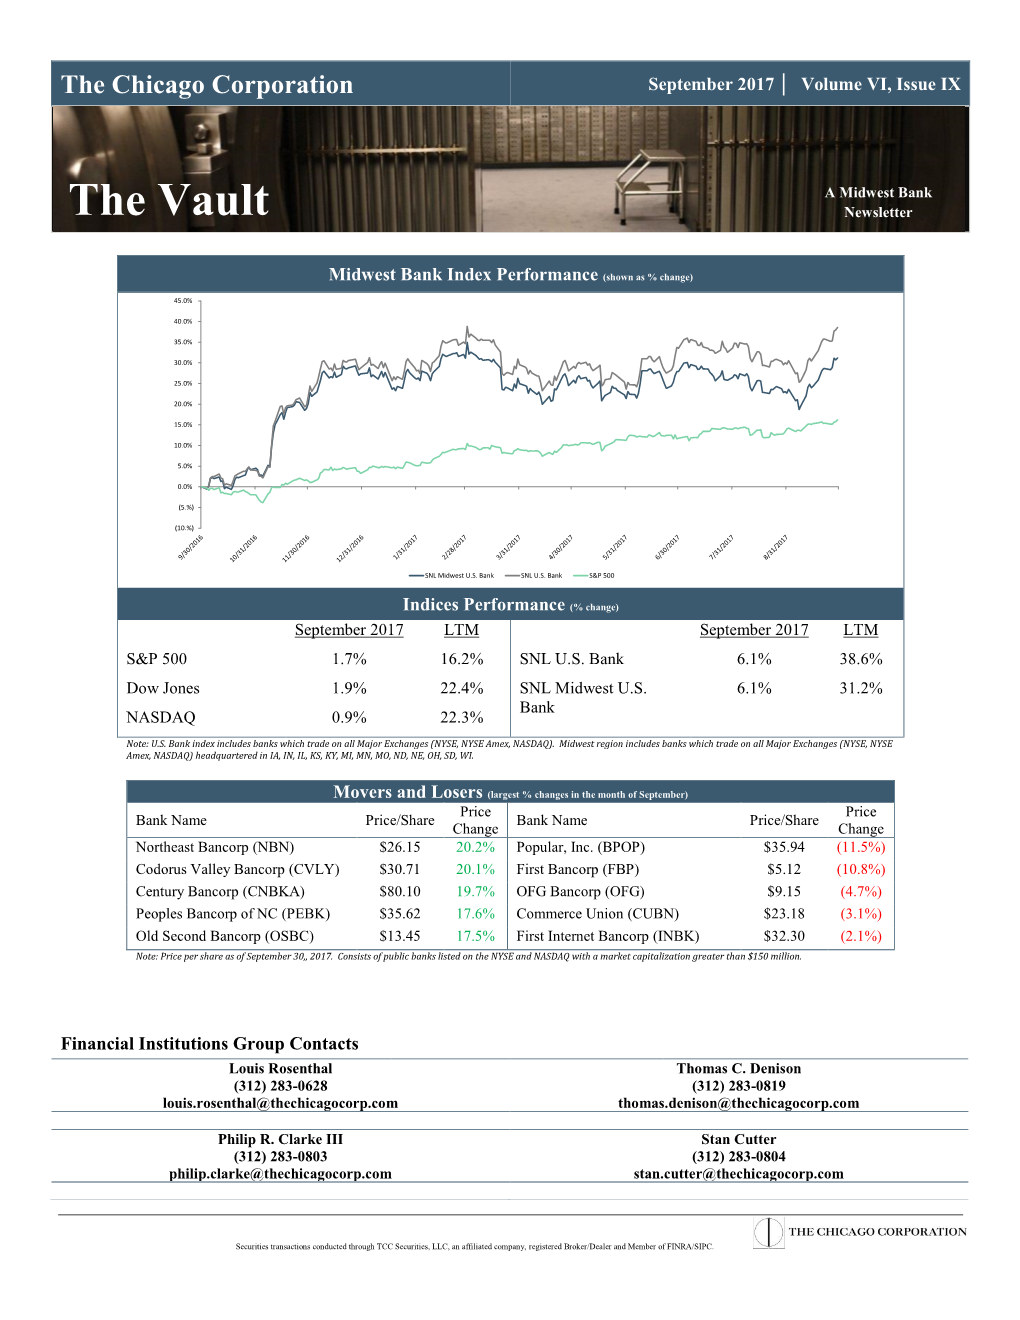 The Vault Newsletter